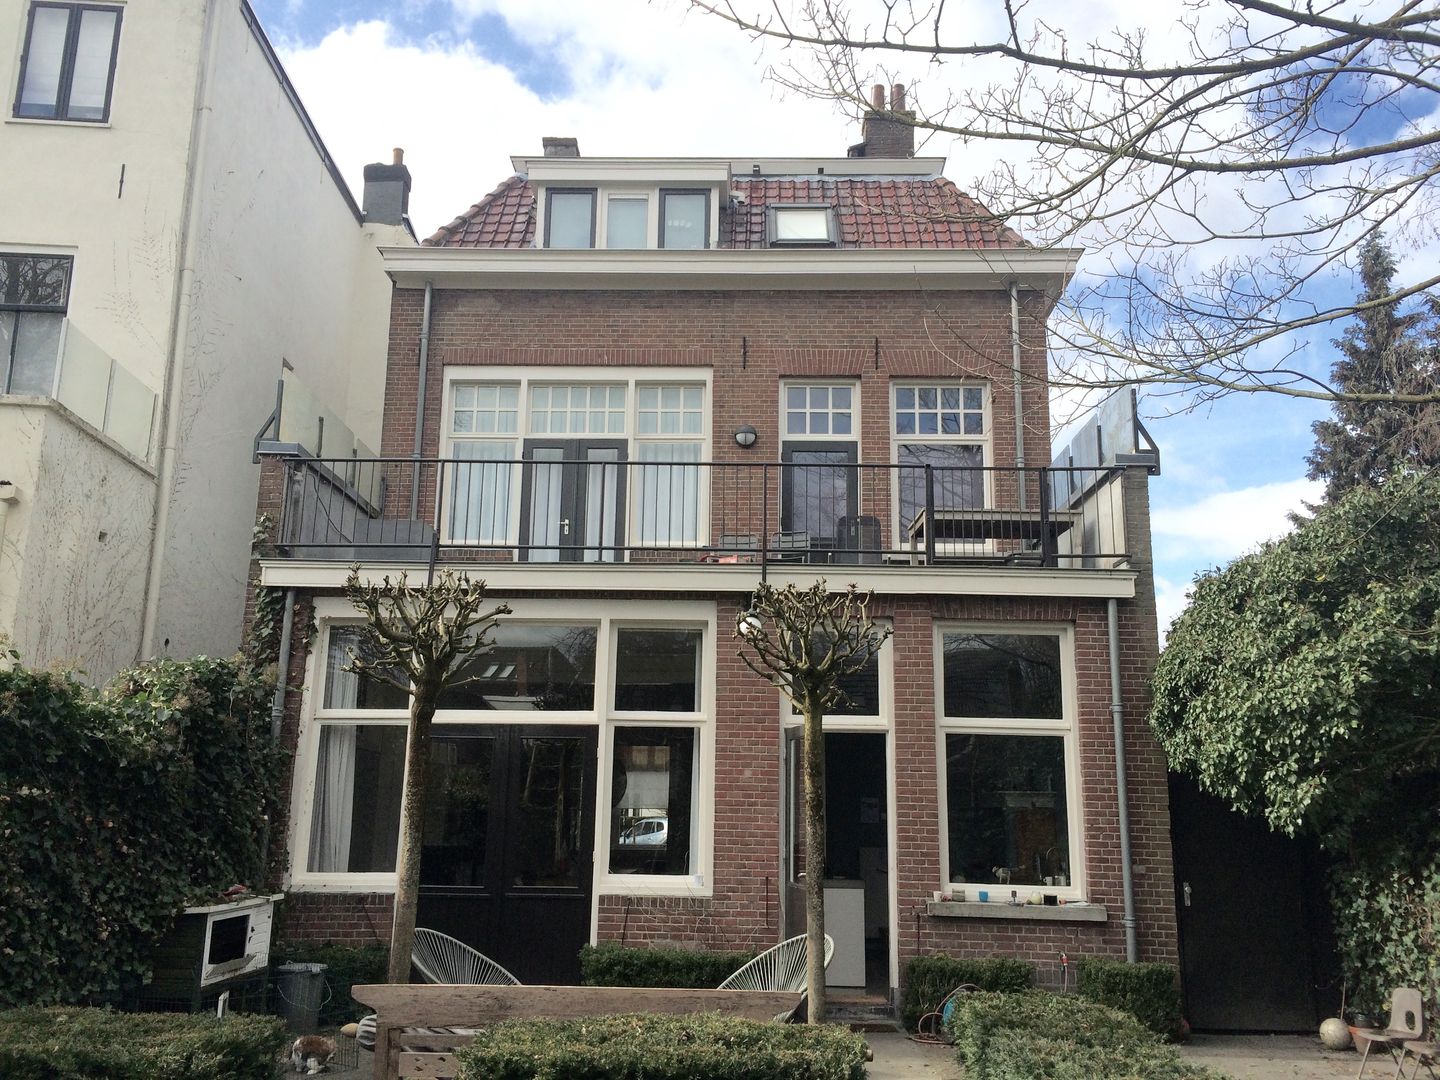 Neem een kijkje in een modern huis in Breda, ddp-architectuur ddp-architectuur 미니멀리스트 주택